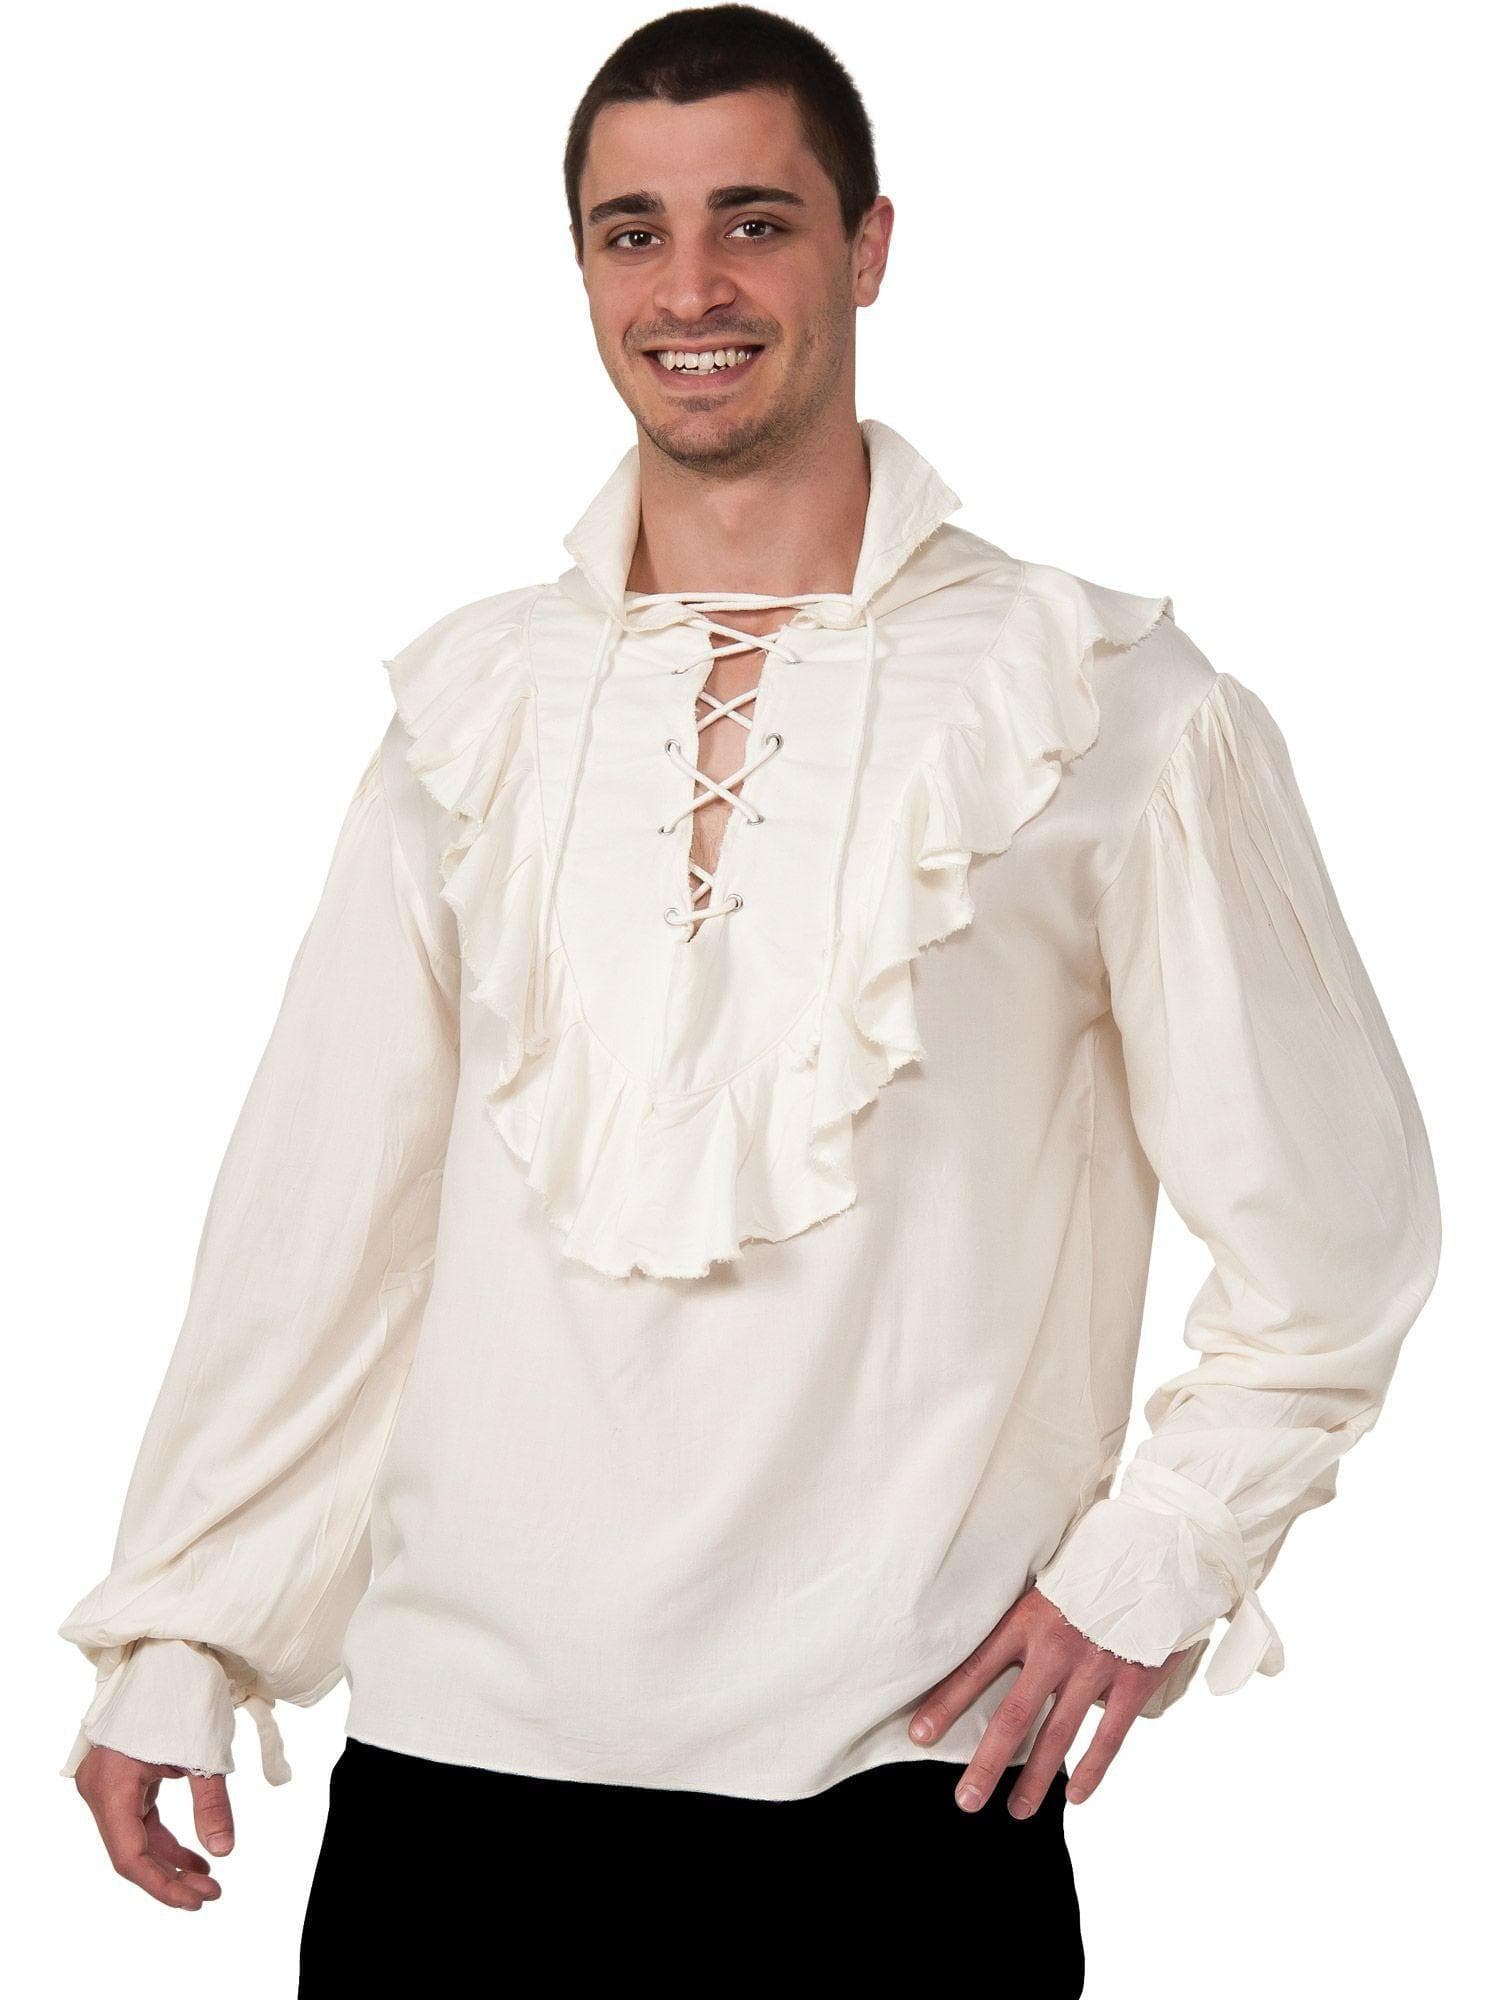 Adult Ecru Pirate Shirt Costume - costumes.com